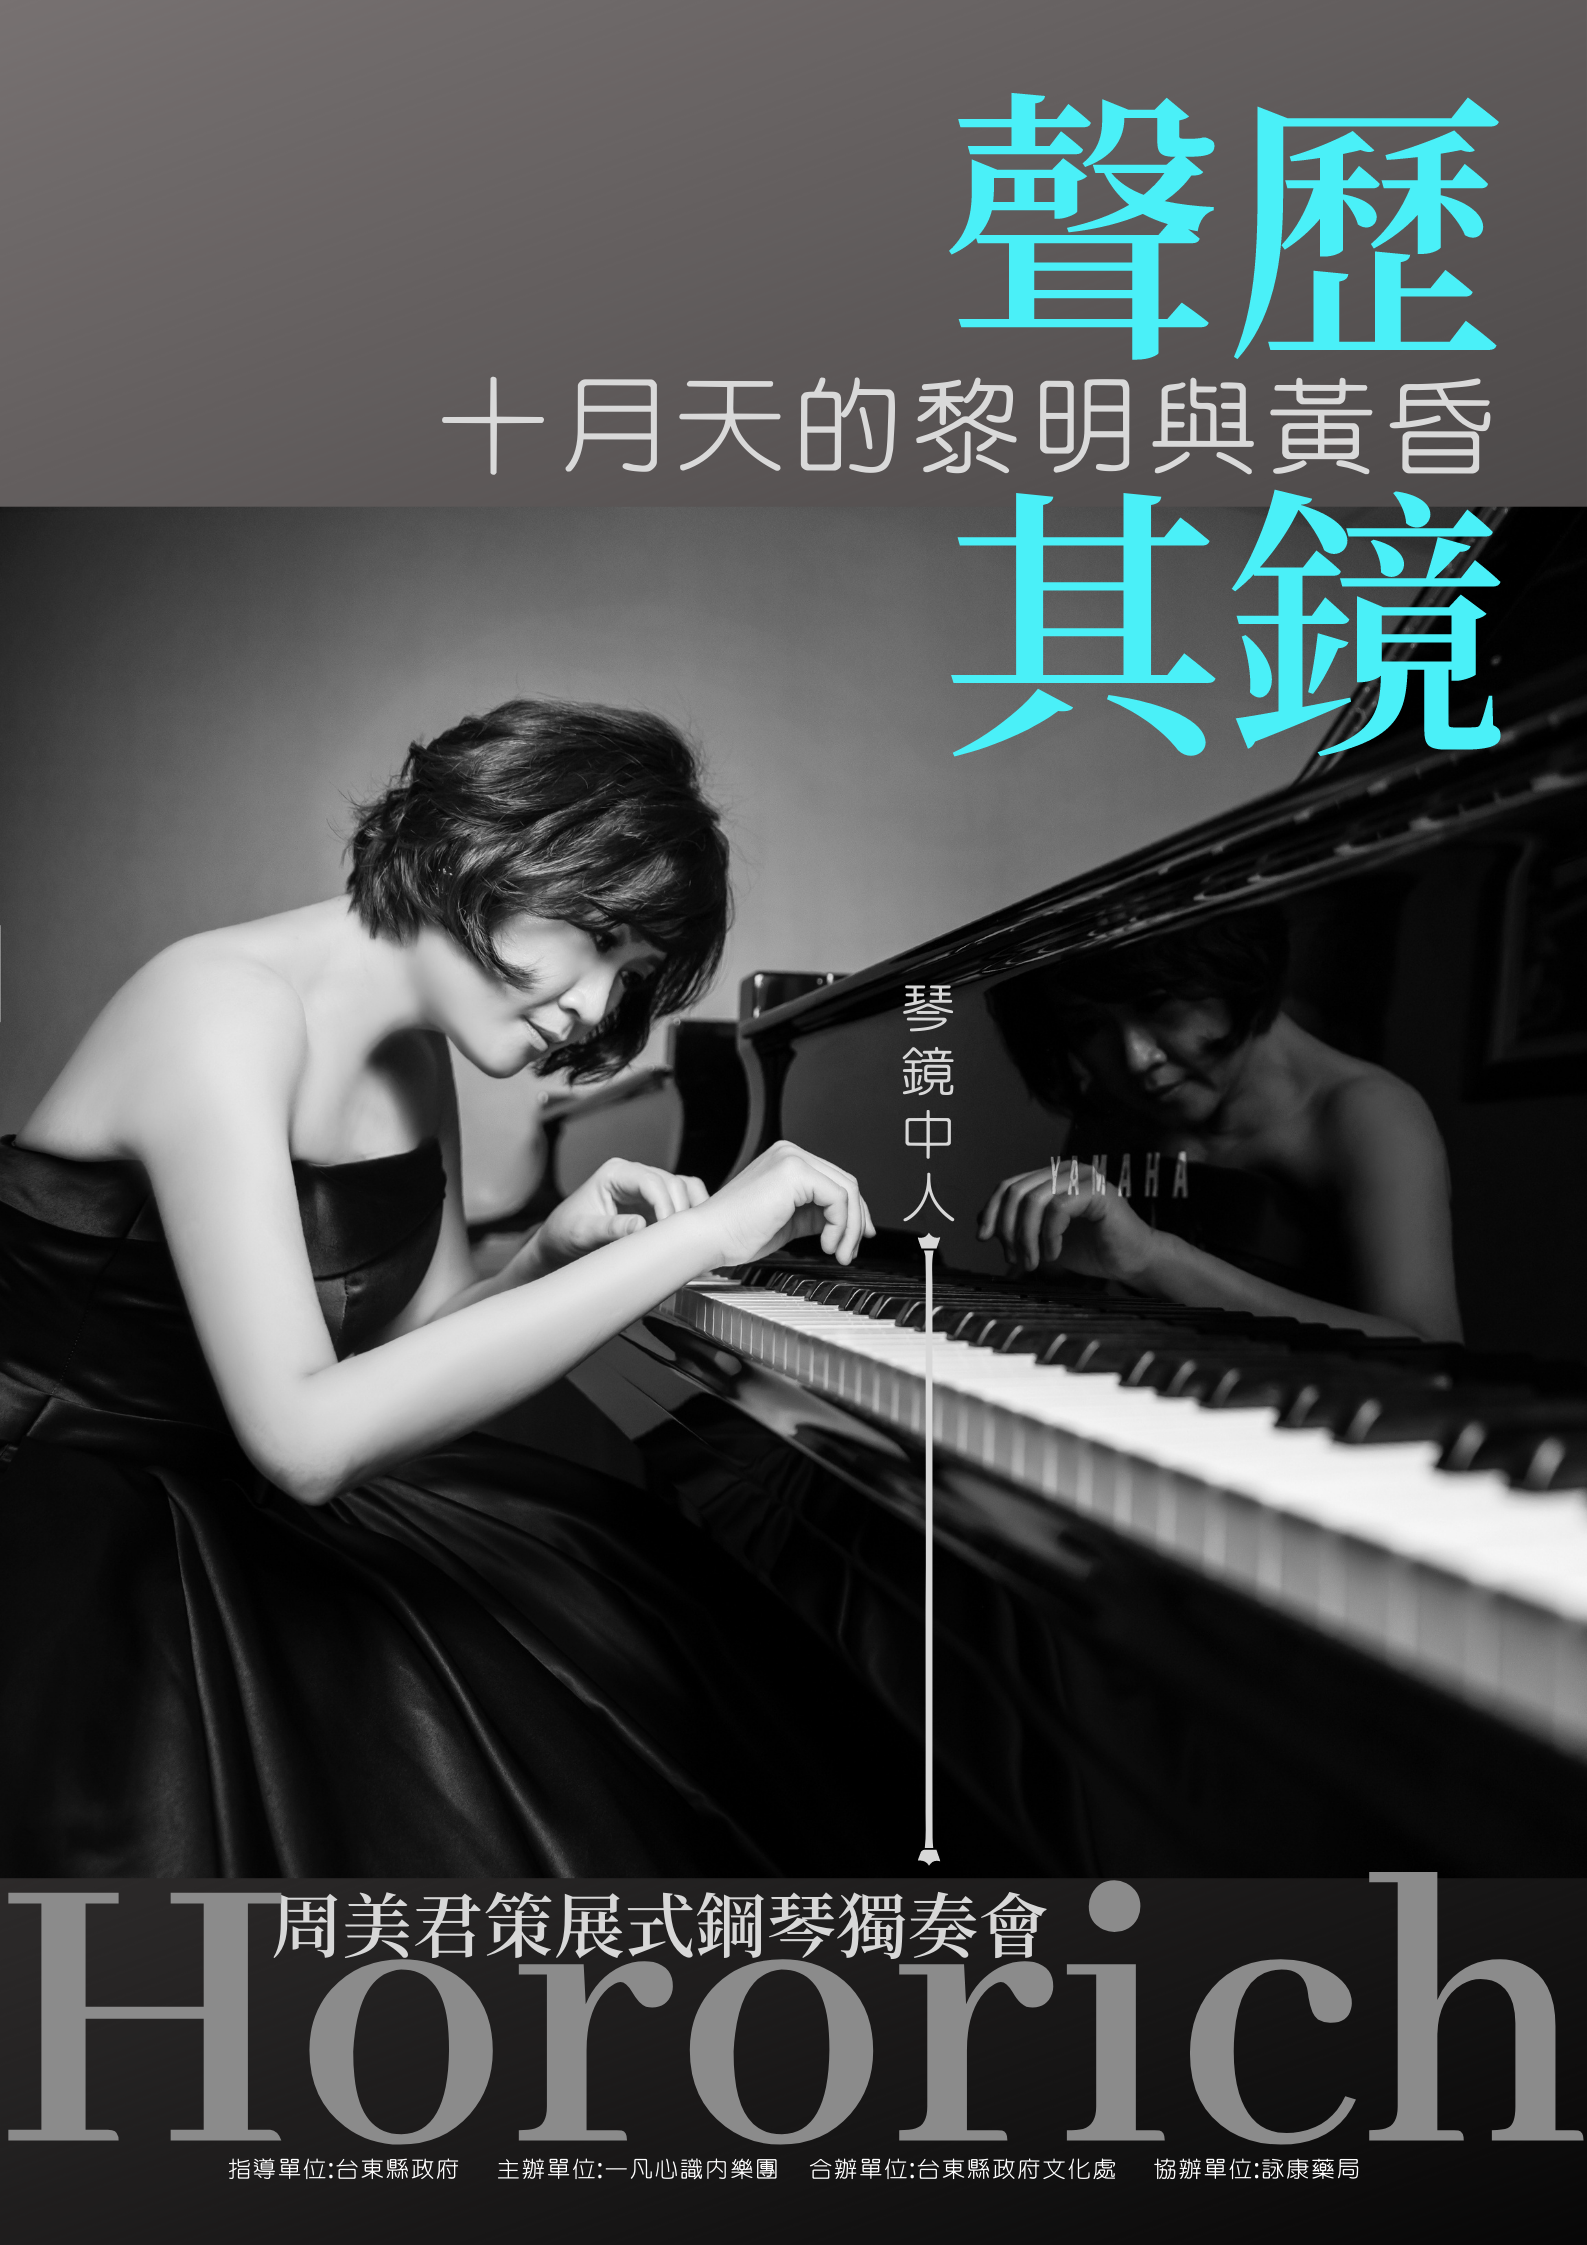 【音樂】周美君「聲歷其鏡」策展式鋼琴獨奏會